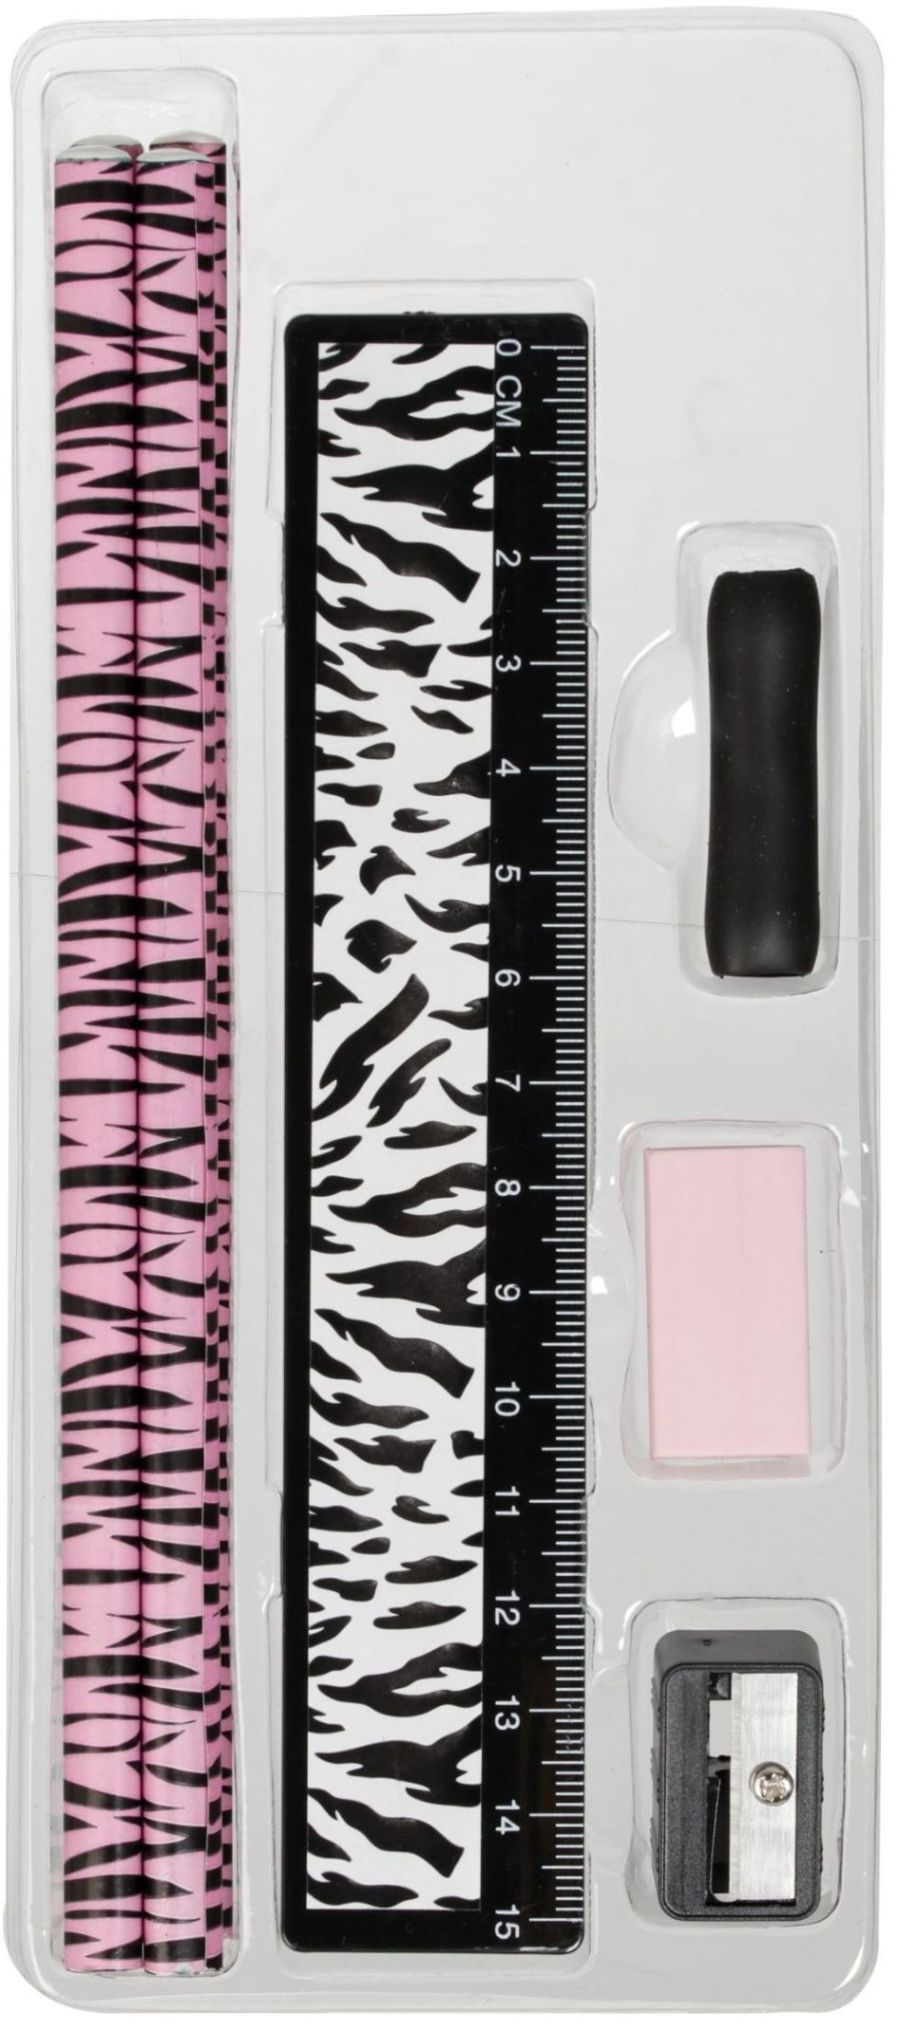 Wild ett skrivset i 8 delar med pennor, suddgummi, linjal och pennvässare. Färg: Rosa, svart och vitt.